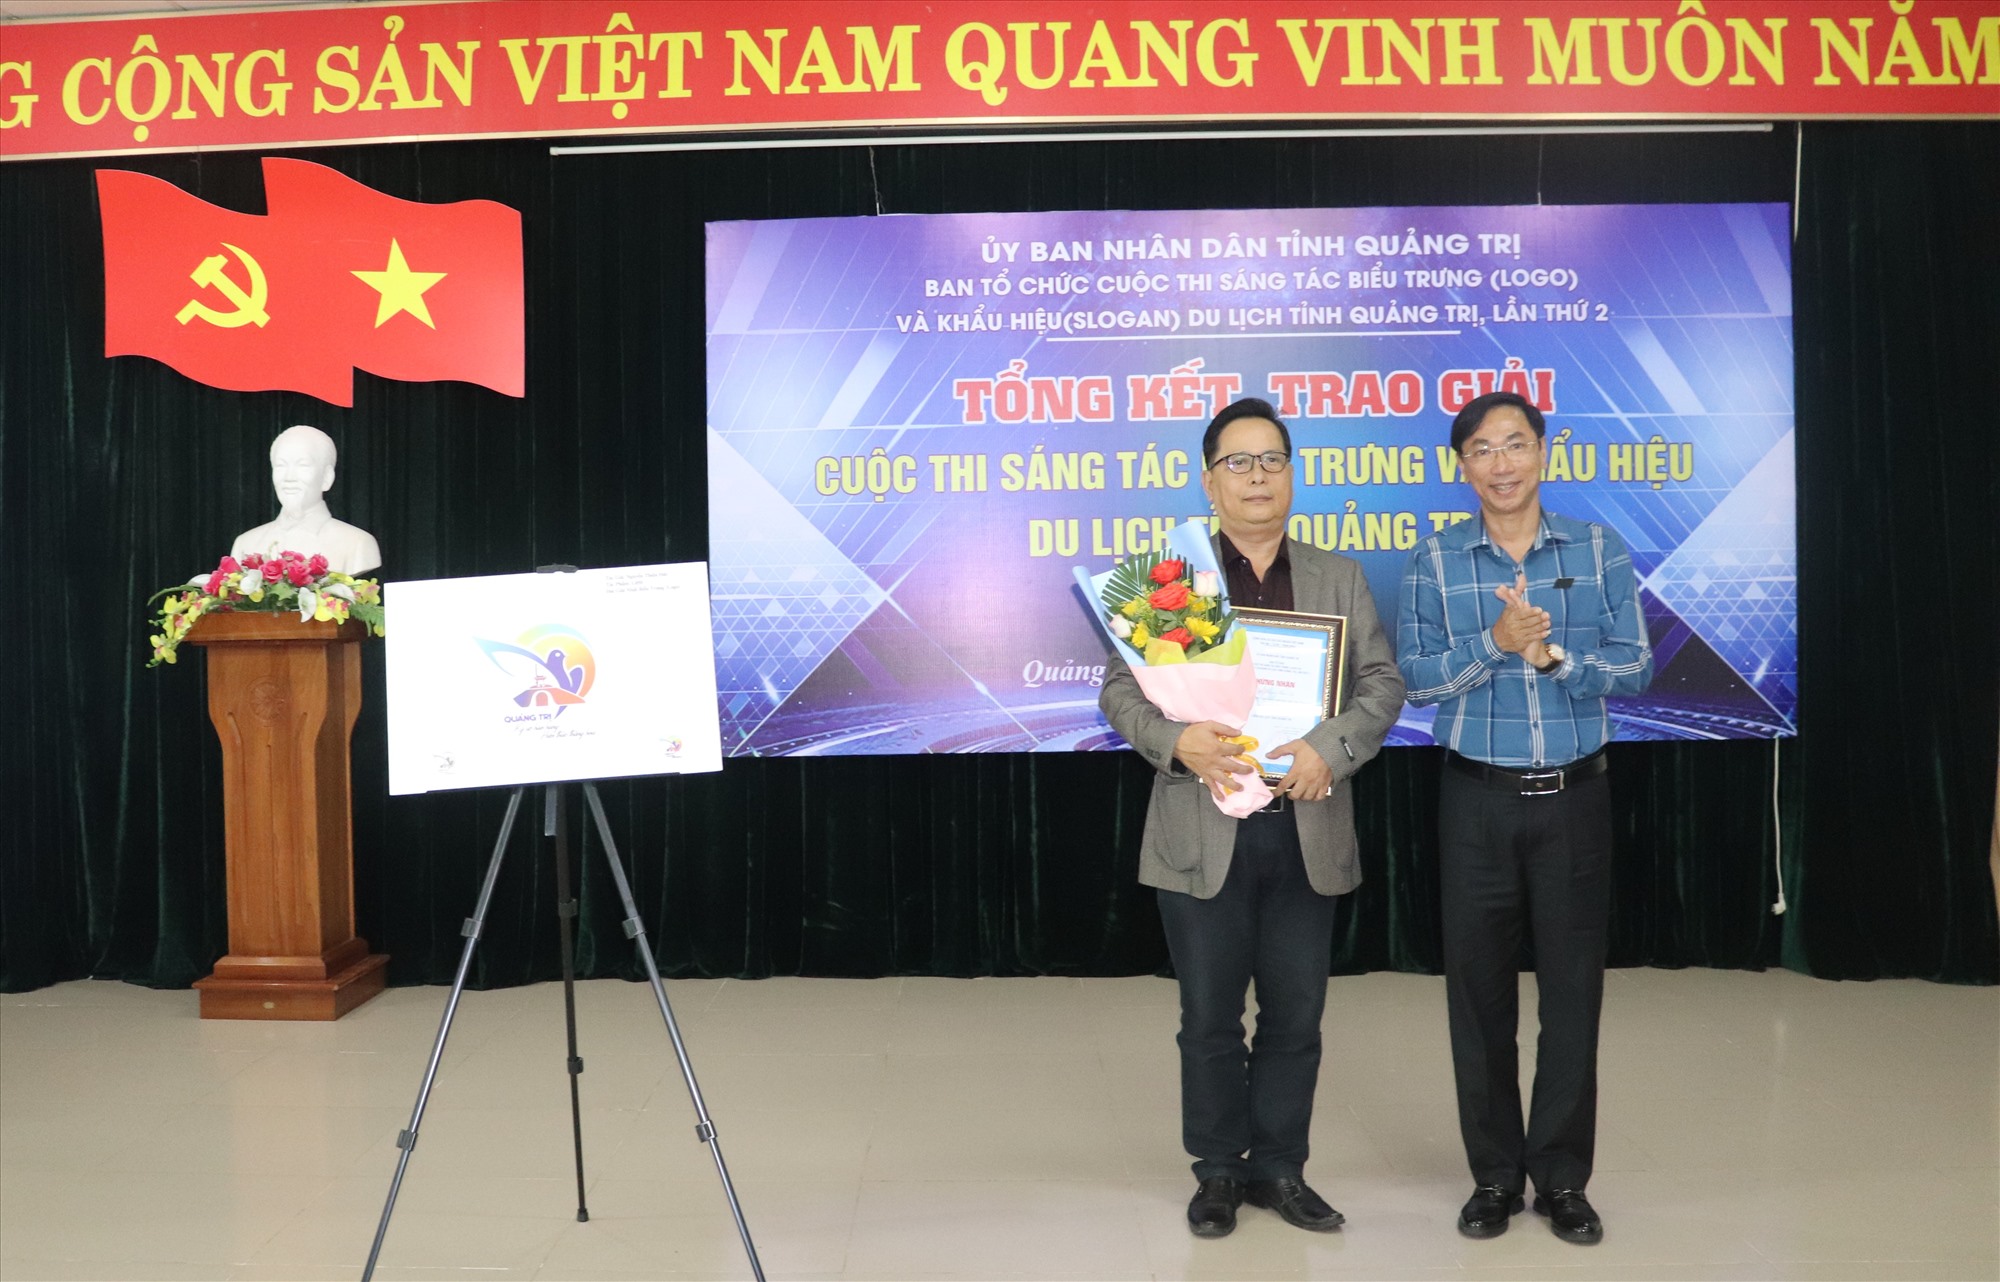 Ban tổ chức trao giải Nhất sáng tác biểu trưng cho tác giả Nguyễn Thiện Đức (TP. Huế) - Ảnh: T.P